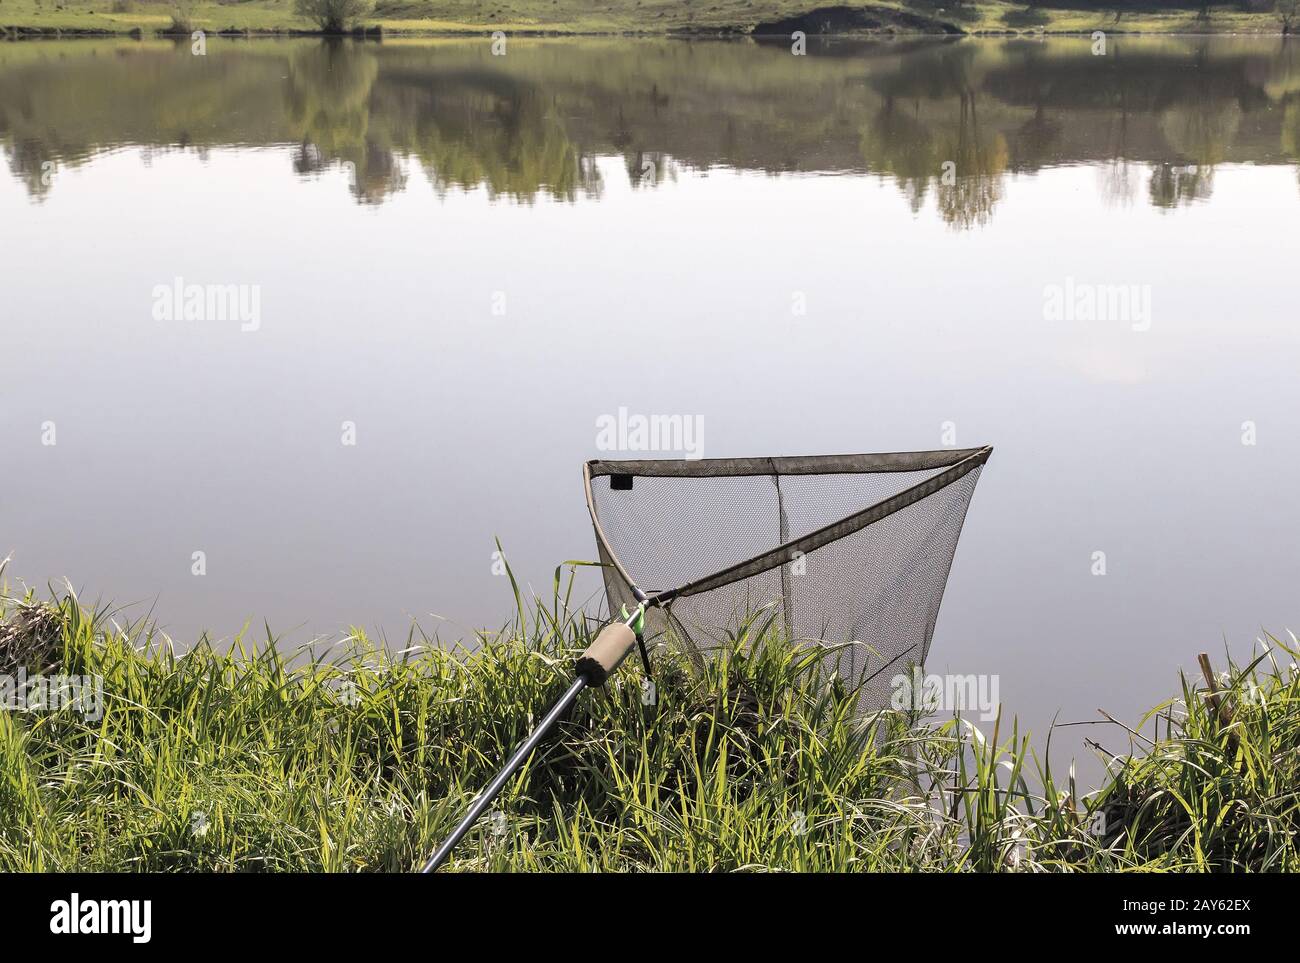 Рыболовные снасти: большая сетка для пойманной рыбы. Foto Stock